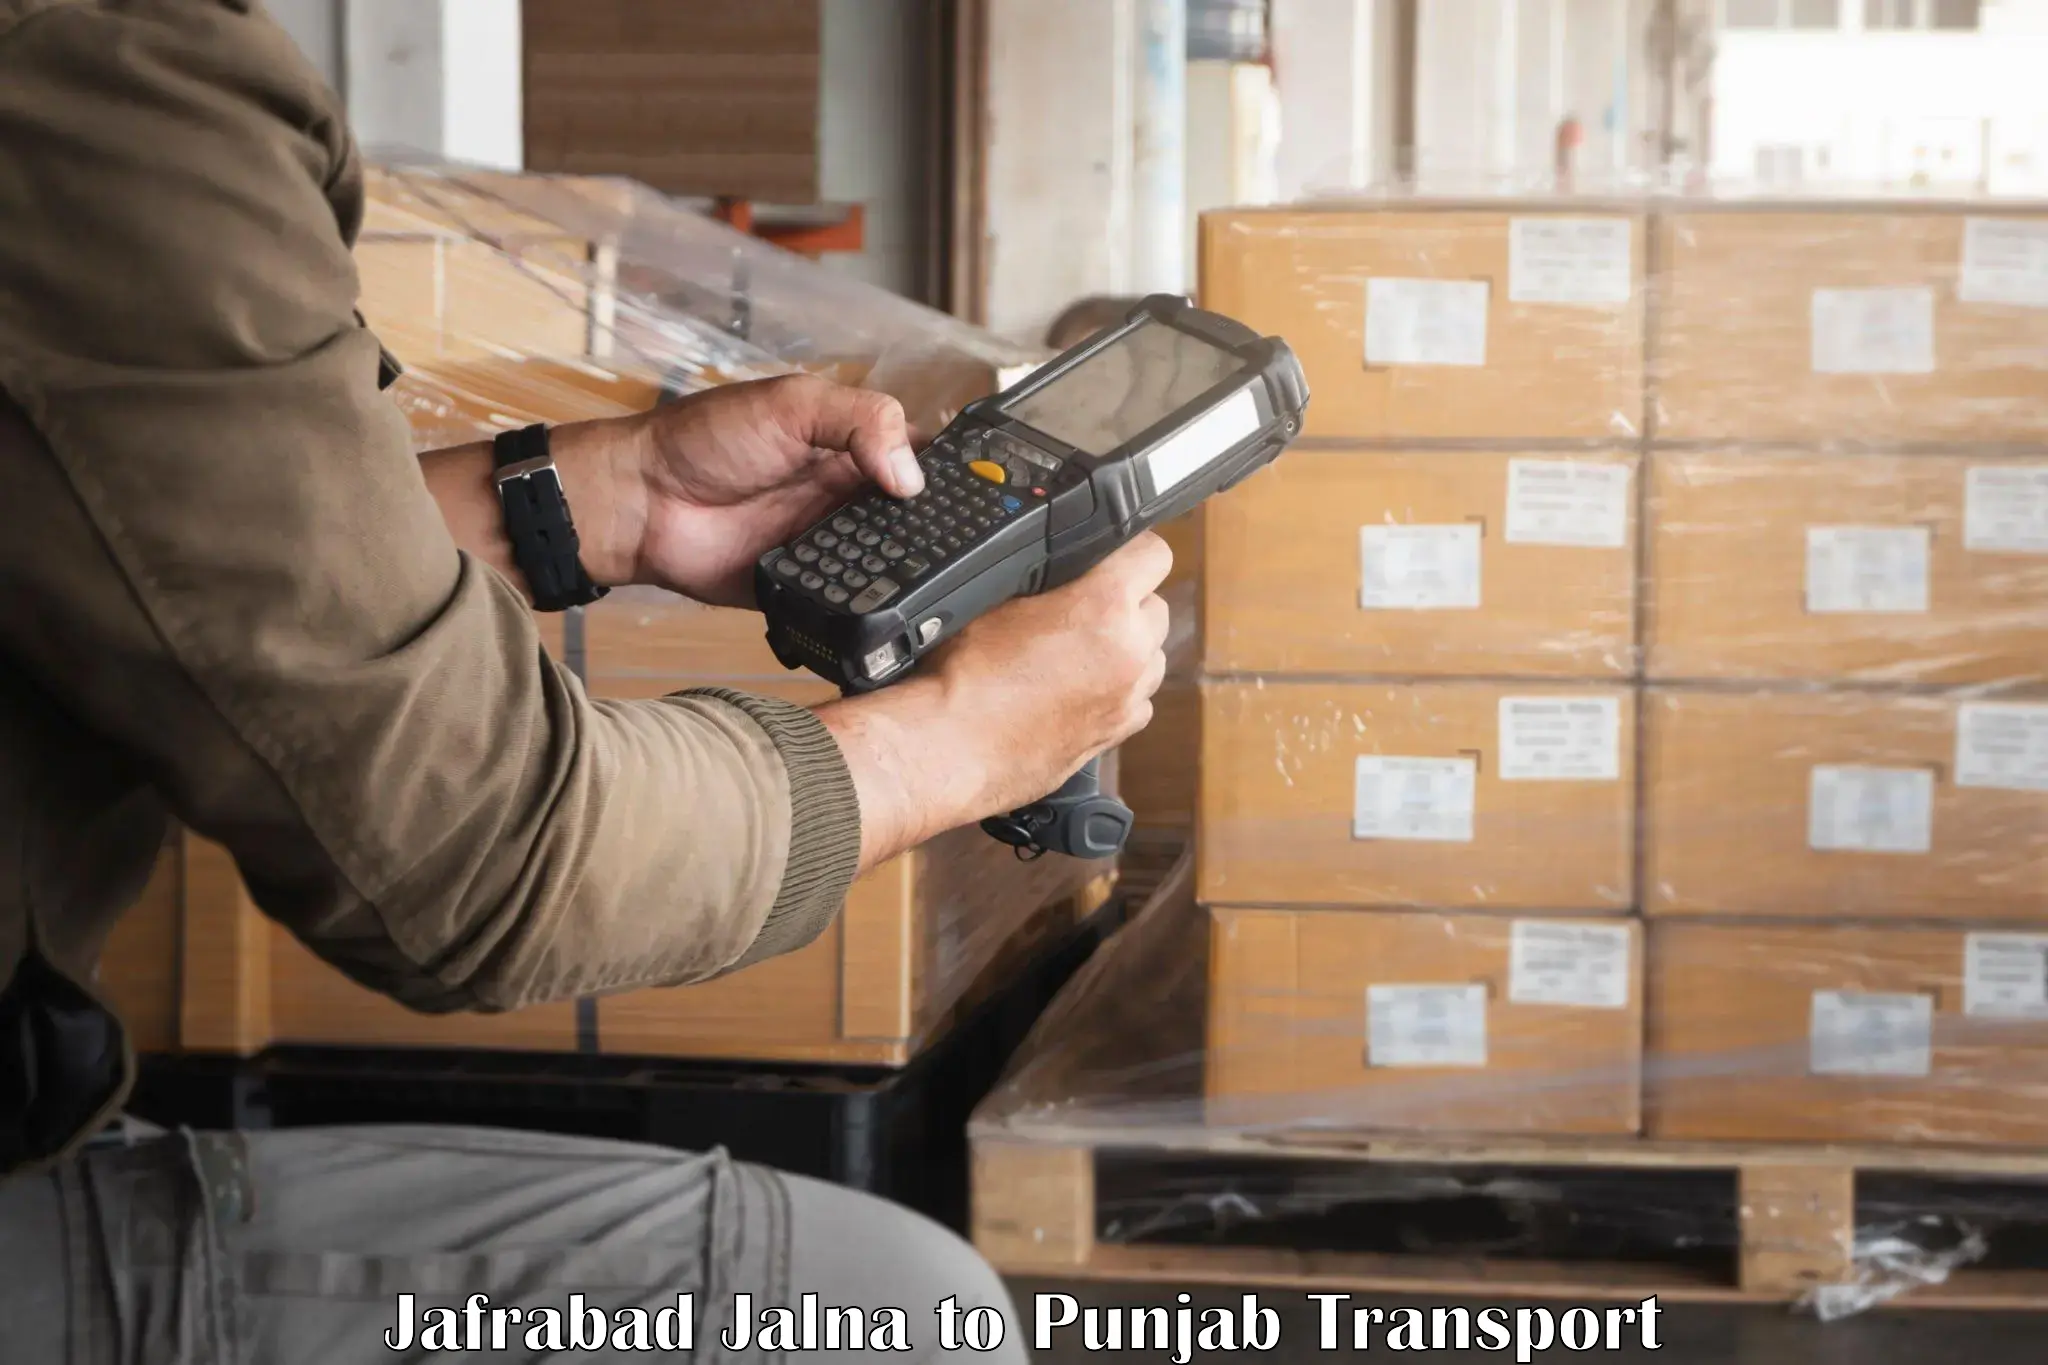 Vehicle transport services Jafrabad Jalna to Patti Tarn Tara